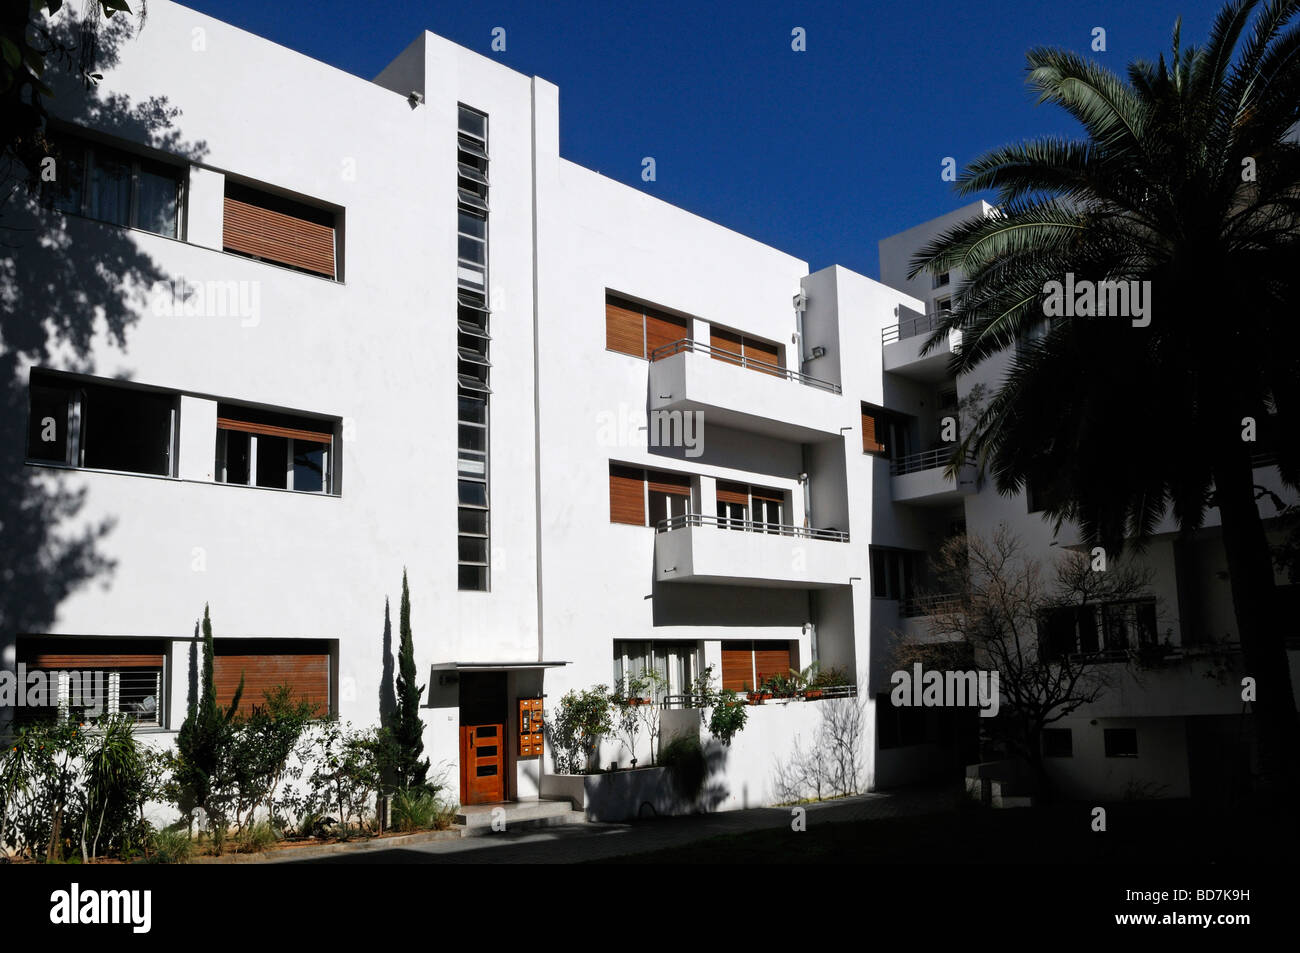 L'architecture du Bauhaus style dans le boulevard Rothschild centre-ville de Tel Aviv, Israël Banque D'Images